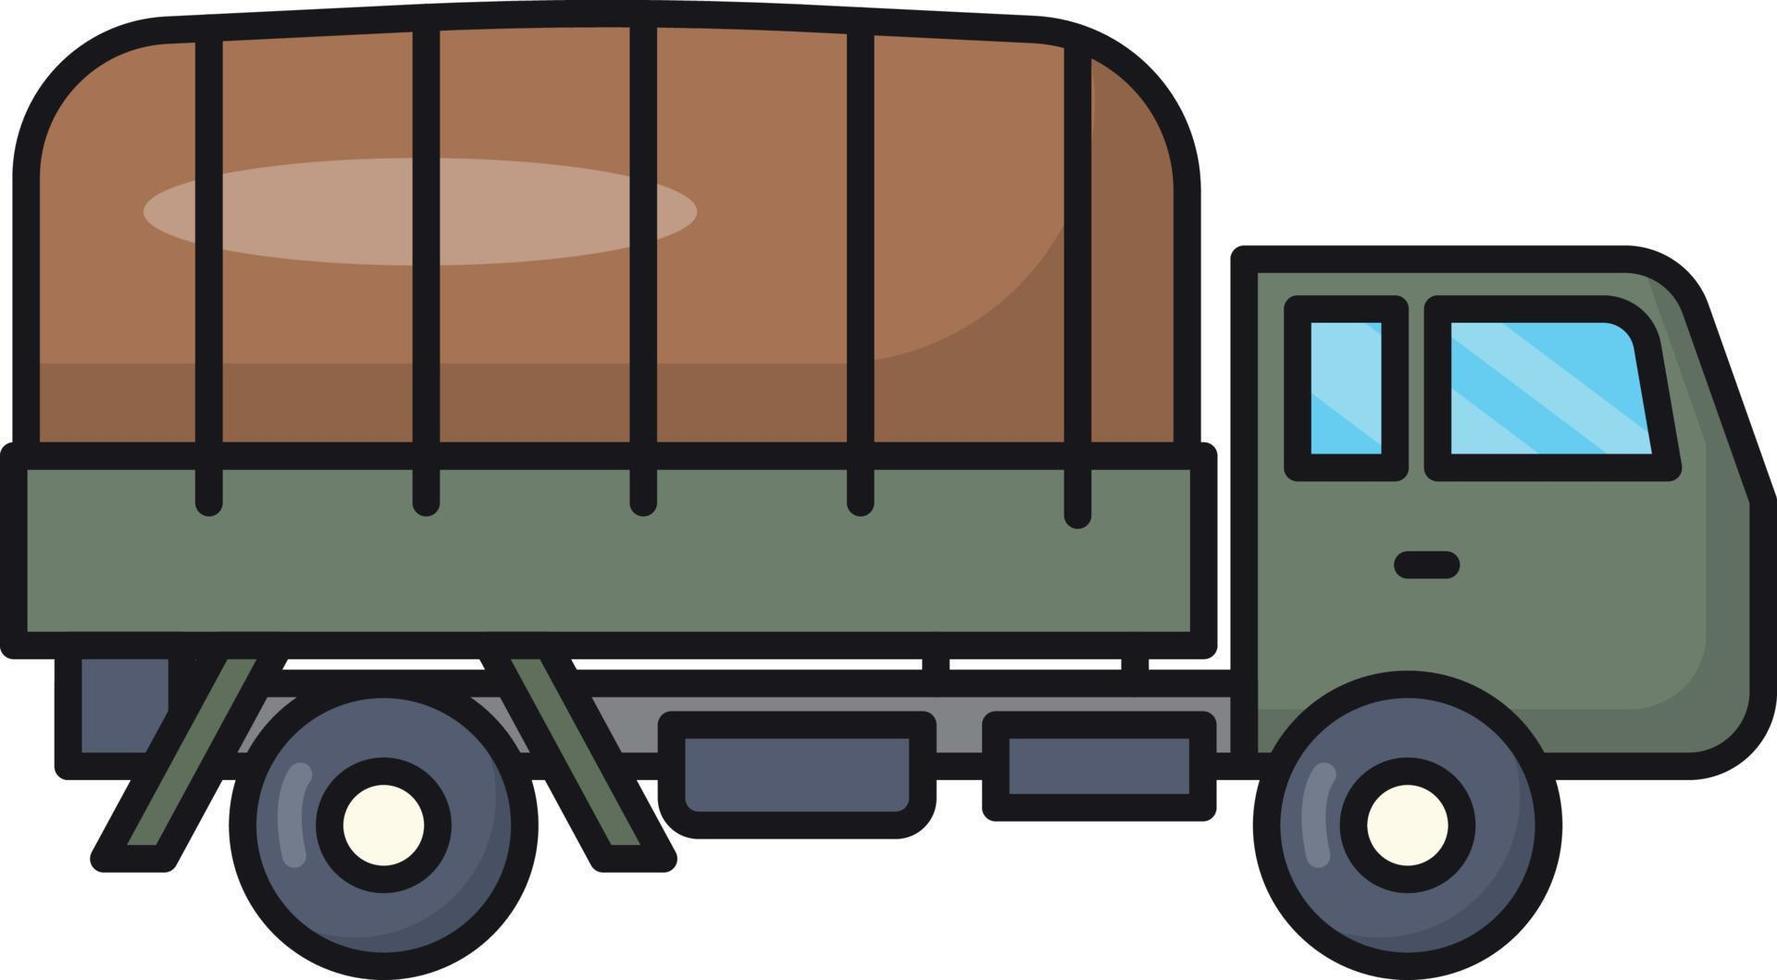 behållare lastbil vektor illustration på en bakgrund.premium kvalitet symbols.vector ikoner för begrepp och grafisk design.